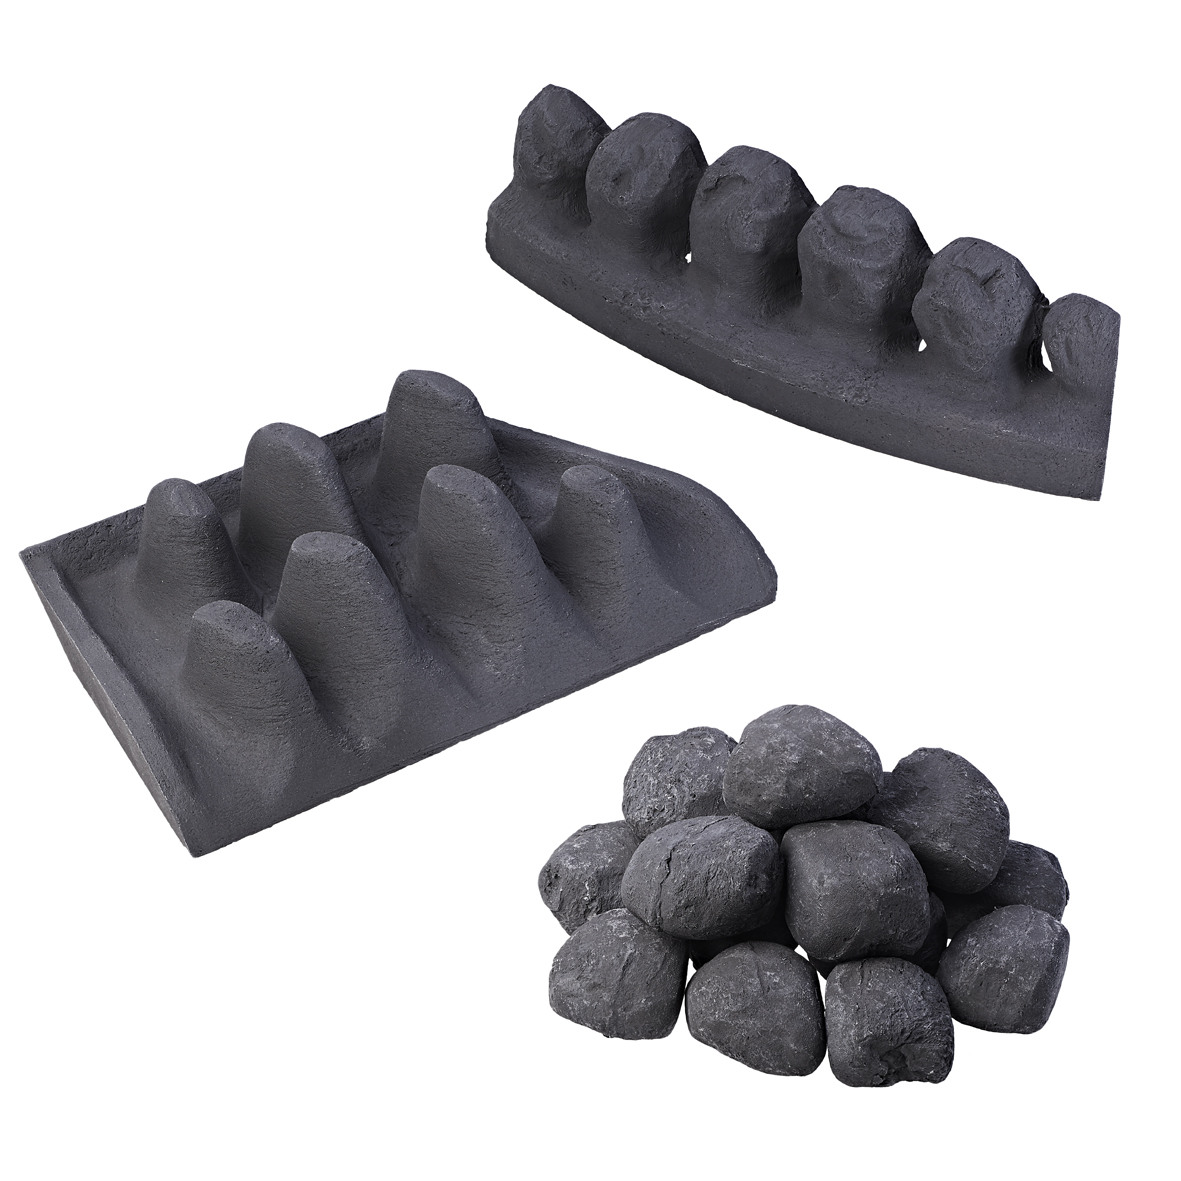 Full Depth Coal Effect Ceramic Kit